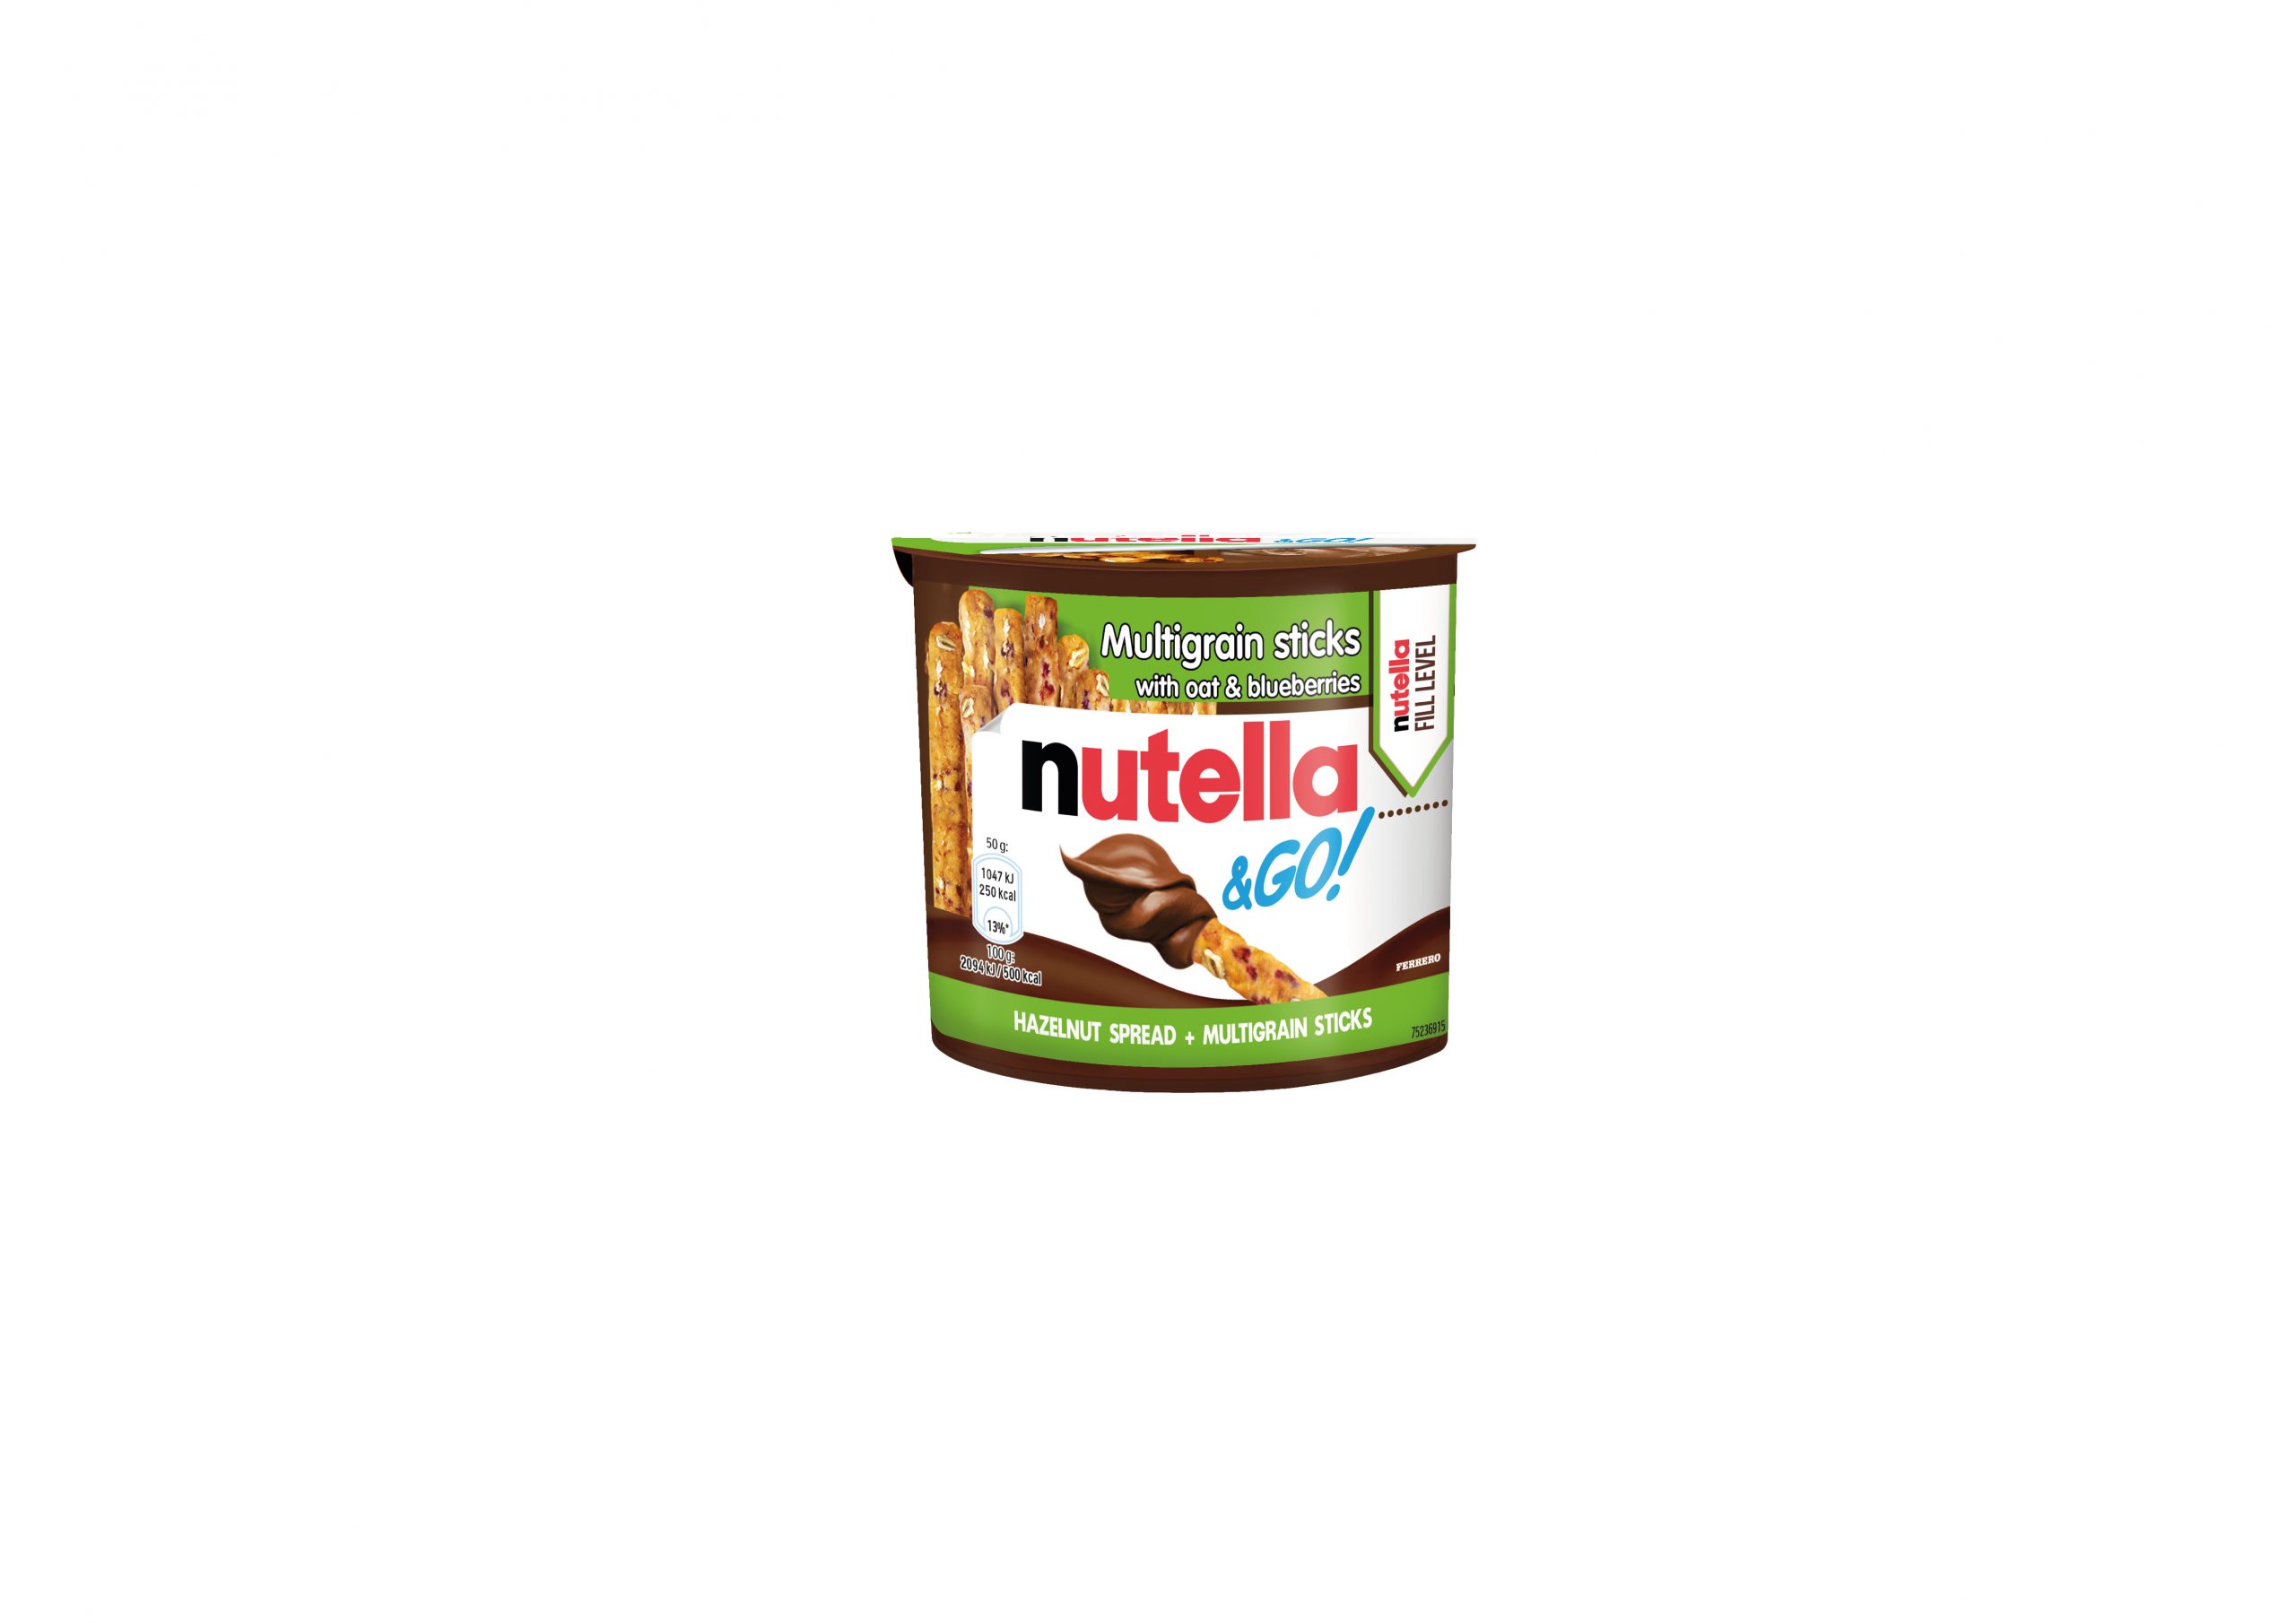 Ferrero announces Nutella & Go! Wholegrain